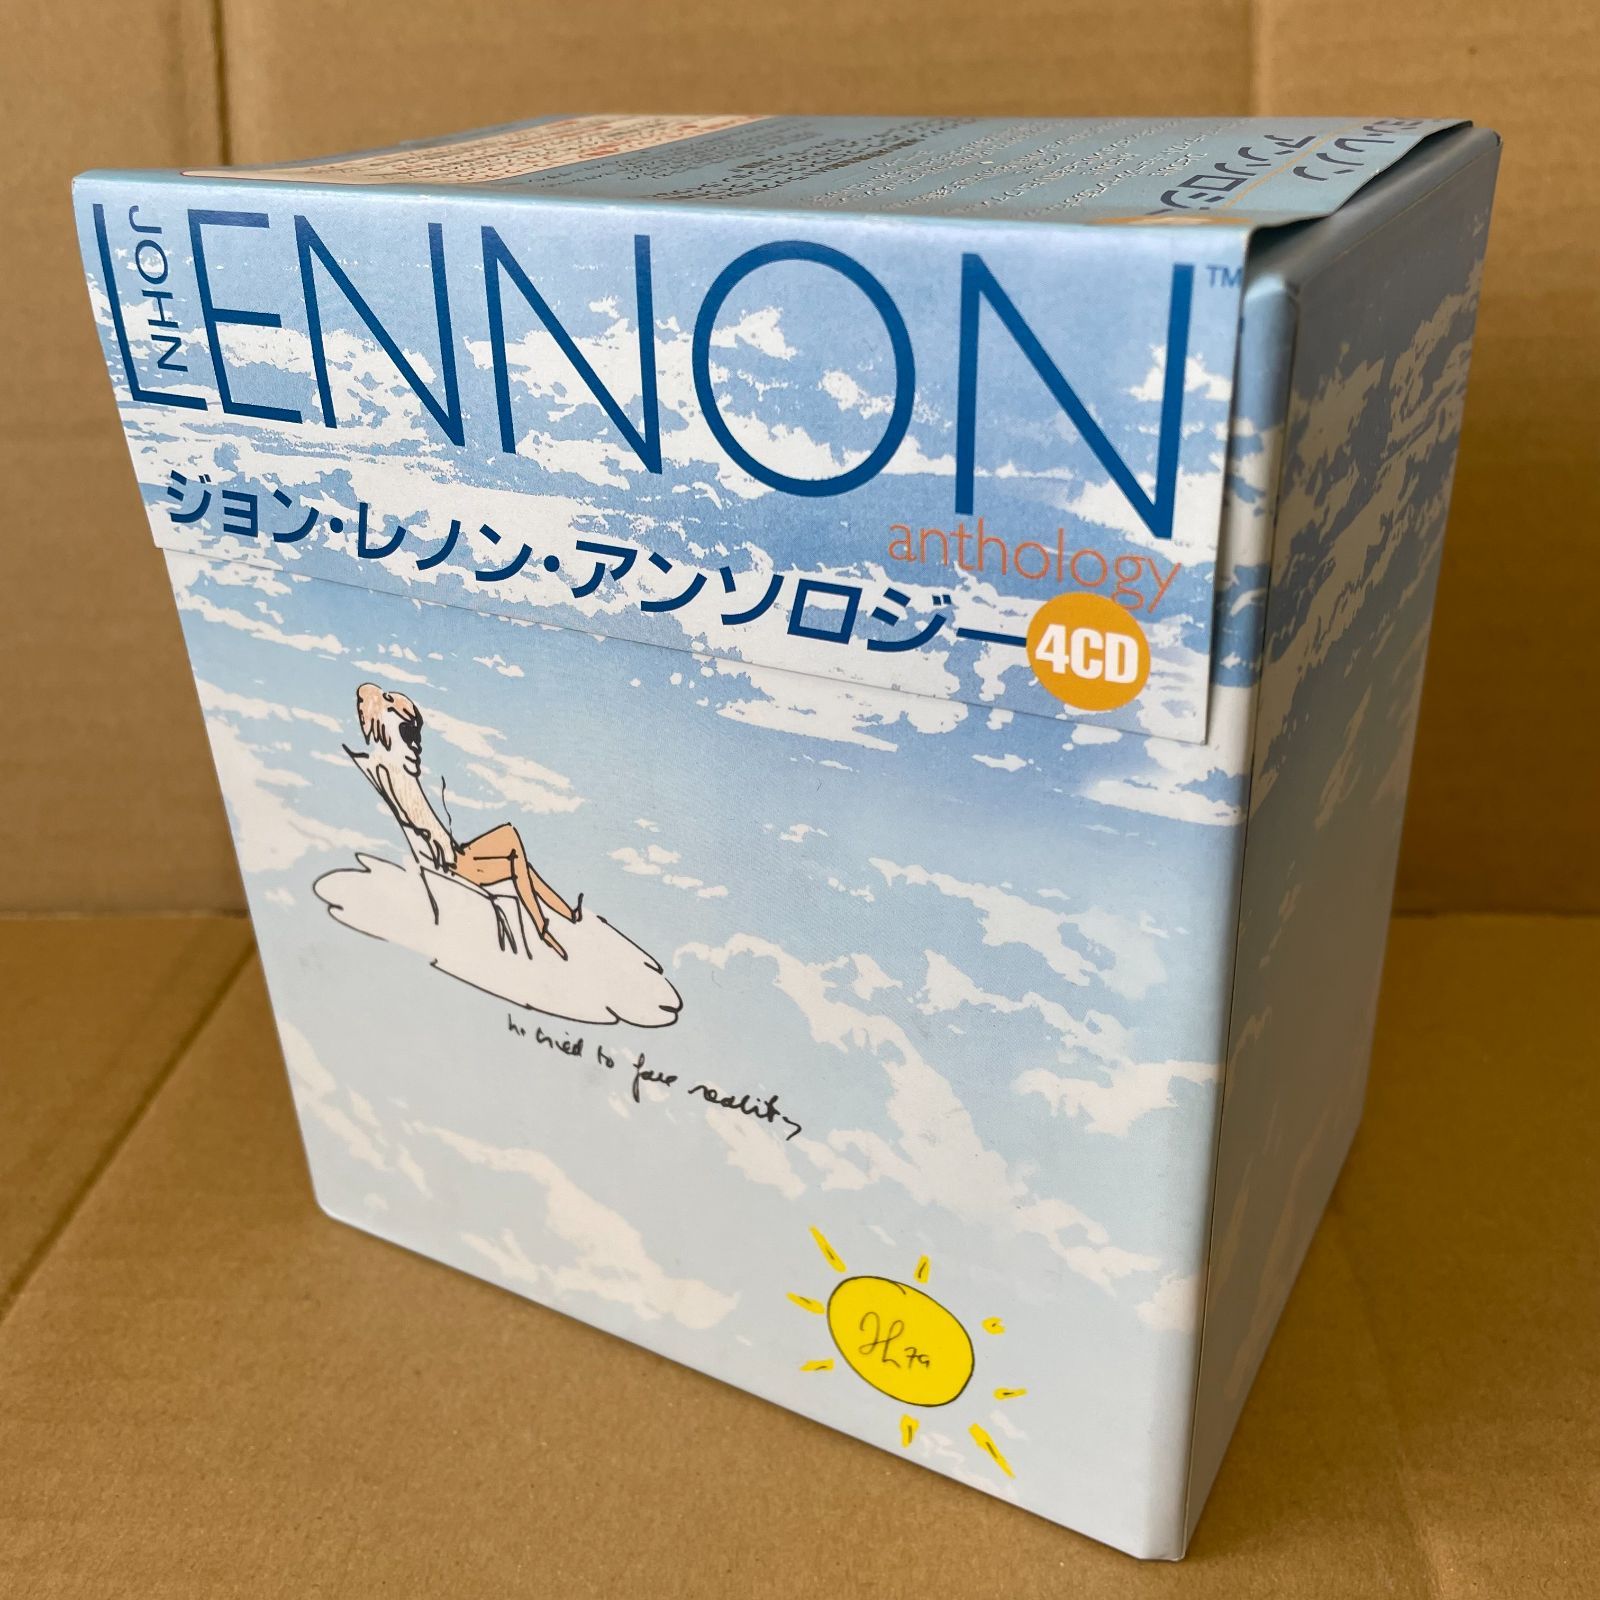 ジョン・レノン 4CD アンソロジー JOHN LENNON -559--